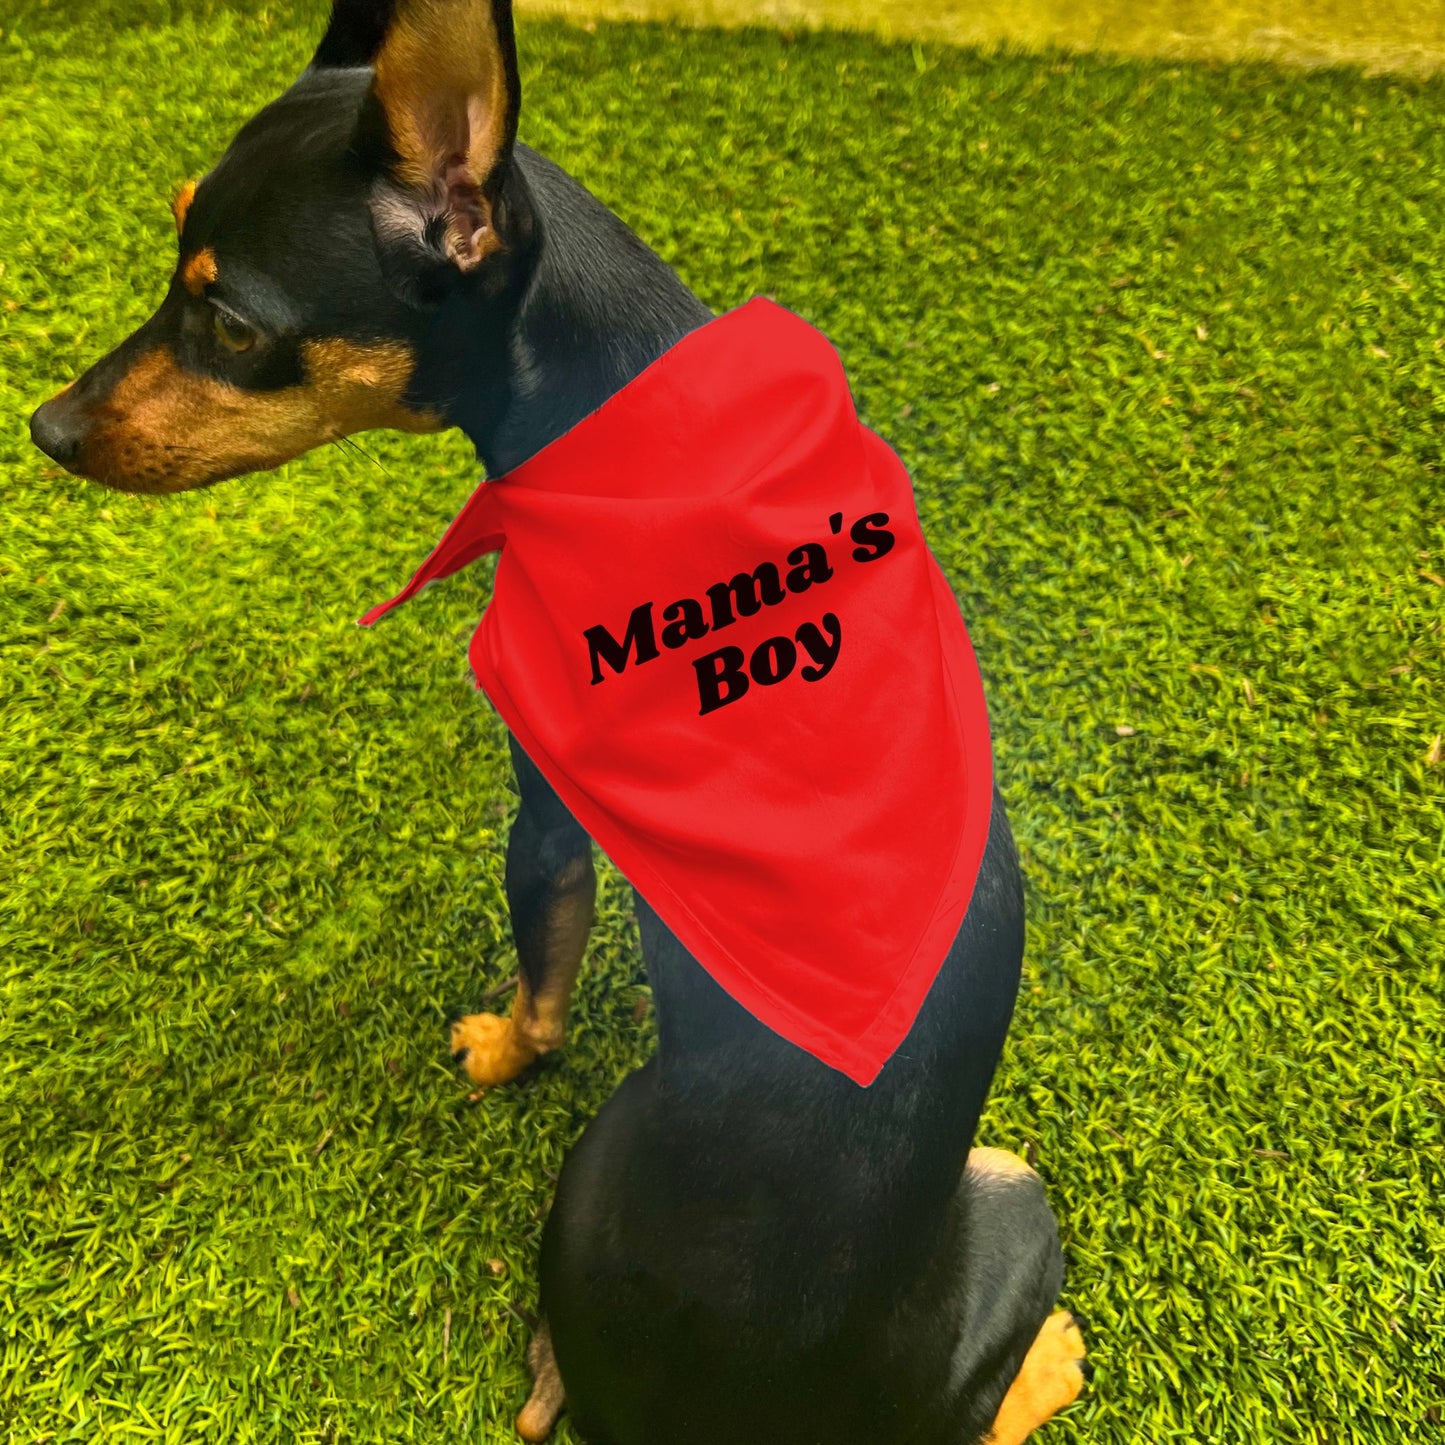 "Mama's Boy" Dog Bandana